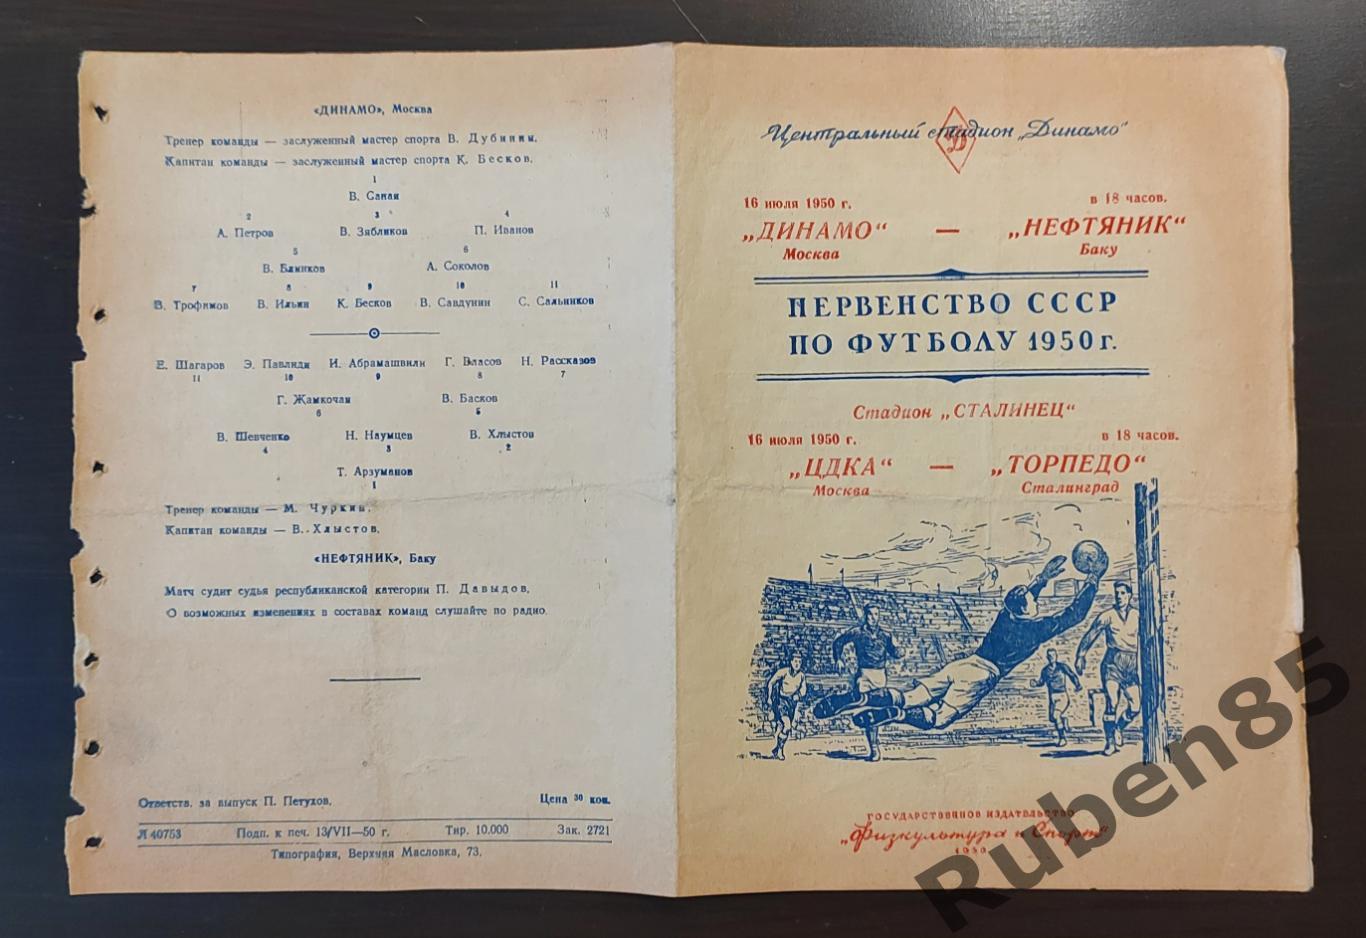 Футбол. Программа Динамо Москва - Нефтяник + ЦДКА - Торпедо Сталинград 1950 ЦСКА